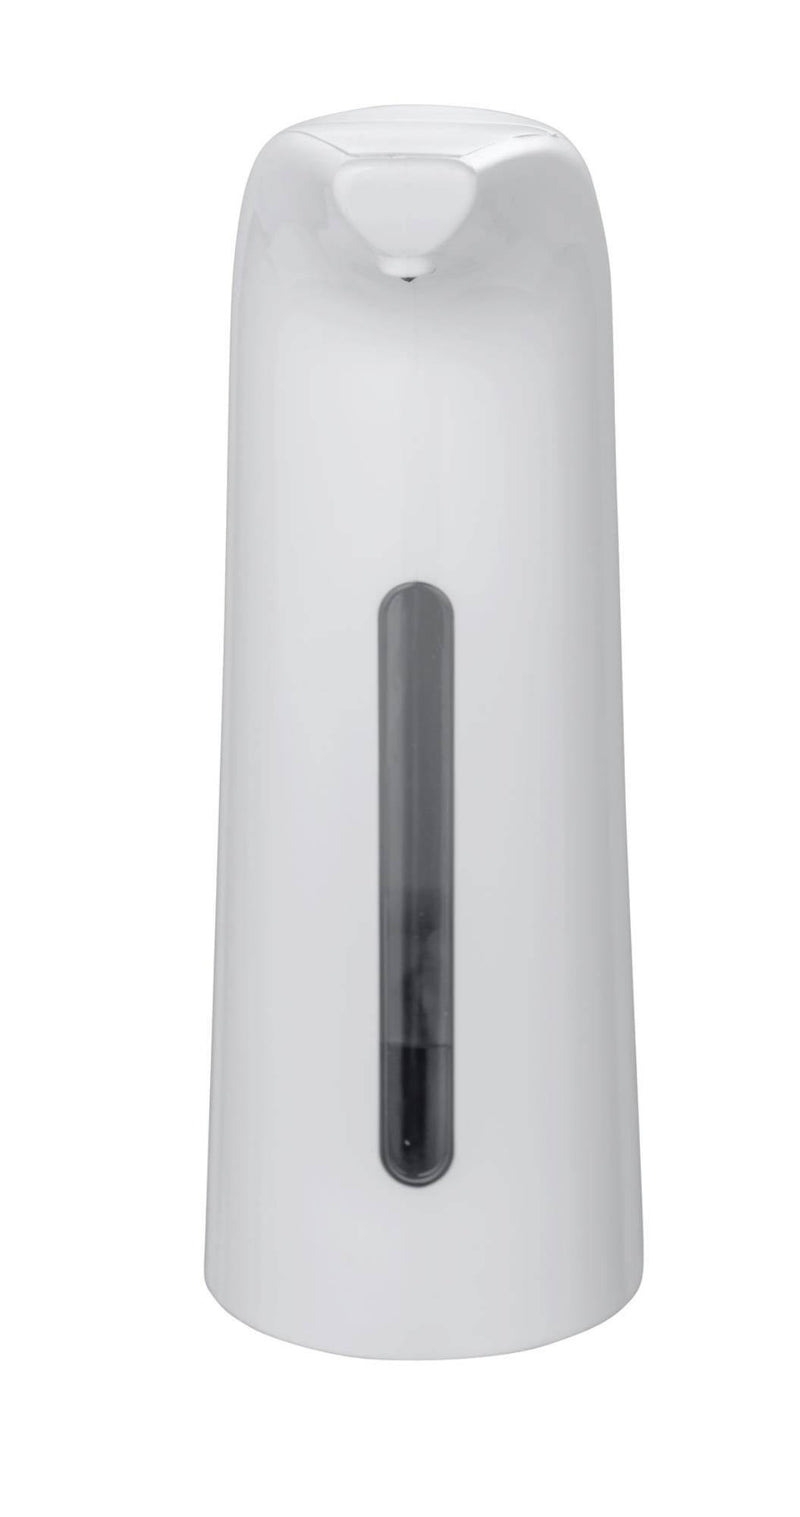 Bezdotykowy dozownik do mydła i płynu do dezynfekcji LARINO, z sensorem na podczerwień,400 ml, WENKO